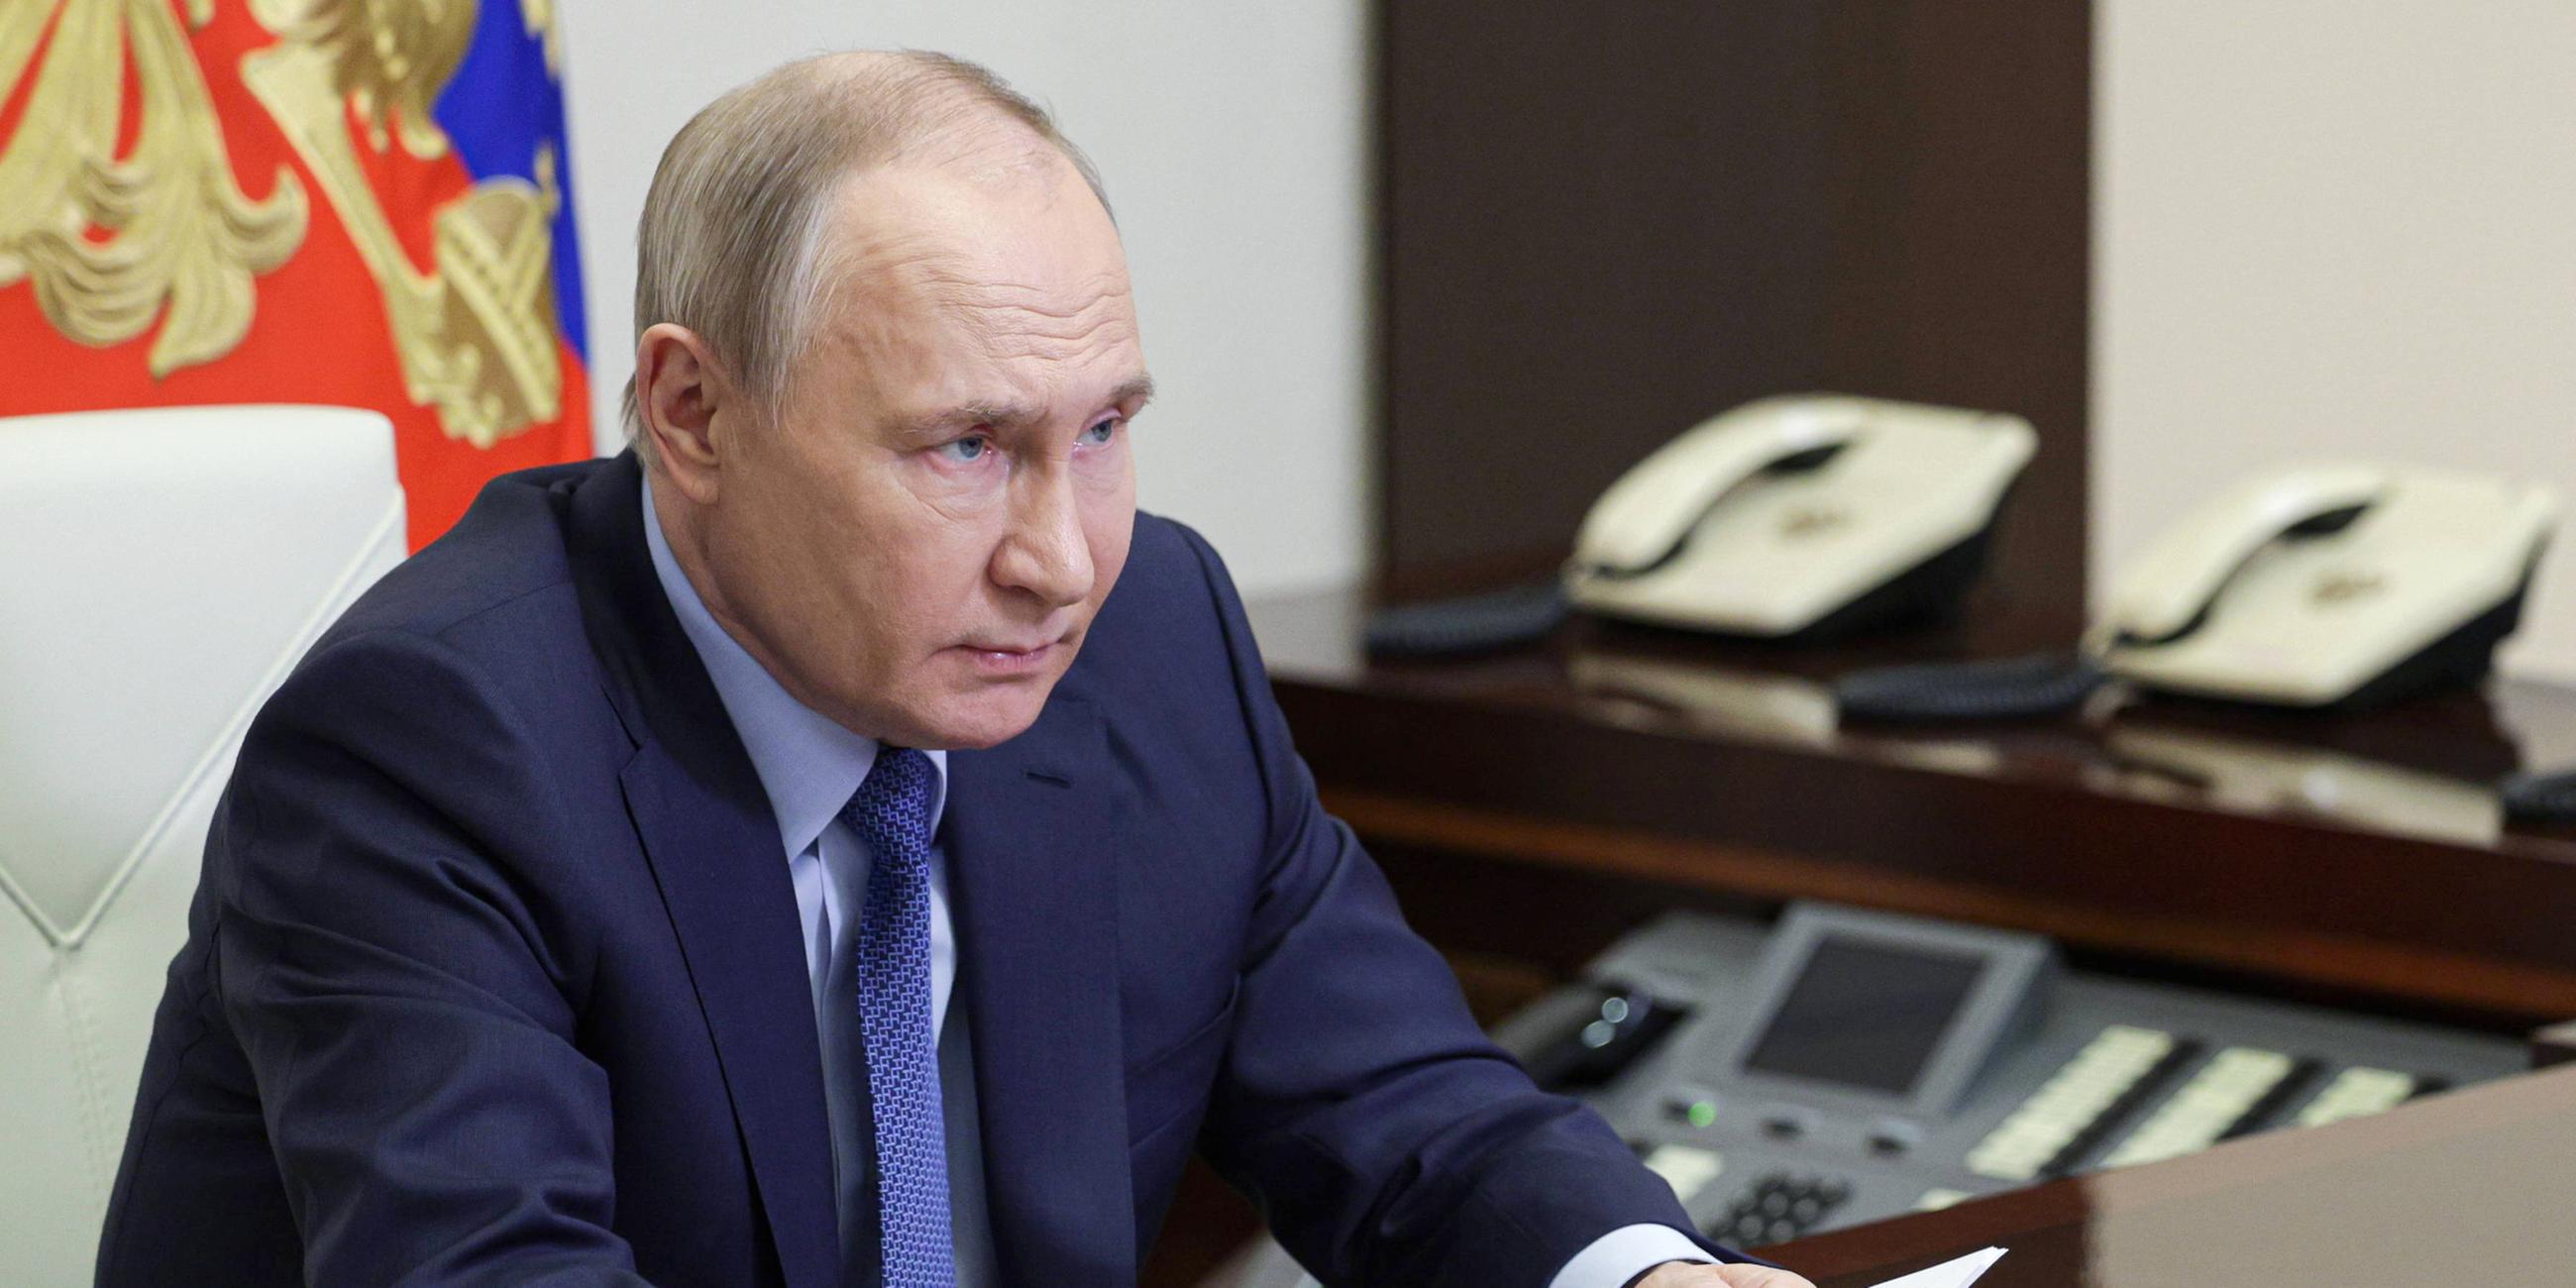 Der russische Präsident Wladimir Putin ist in seinem Büro in der Novo-Ogaryovo-Residenz